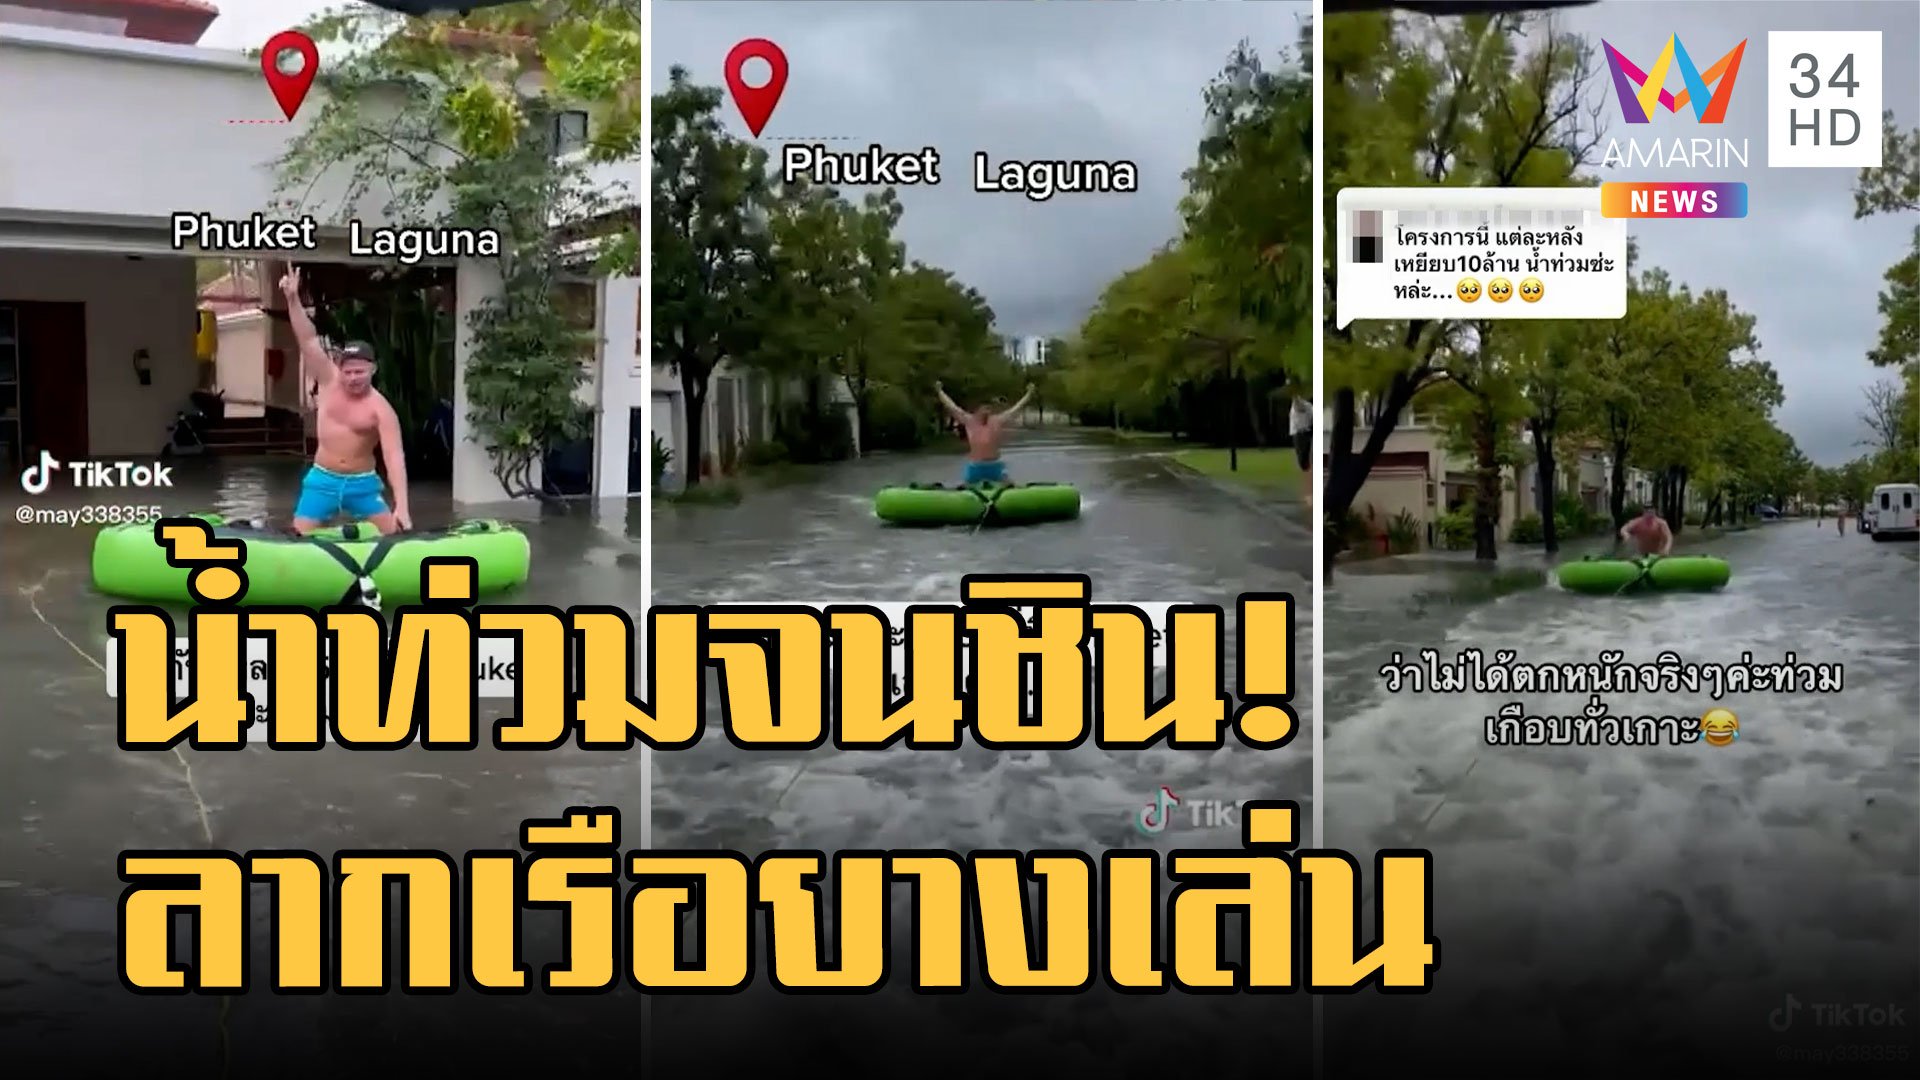 ฝนตกหนัก! ถนนกระทู้-ป่าตอง ดินสไลด์ปิดรถขึ้น - น้ำท่วมไม่เครียด! ลากเรือยางกลางถนน | ข่าวอรุณอมรินทร์ | 20 ต.ค. 65 | AMARIN TVHD34